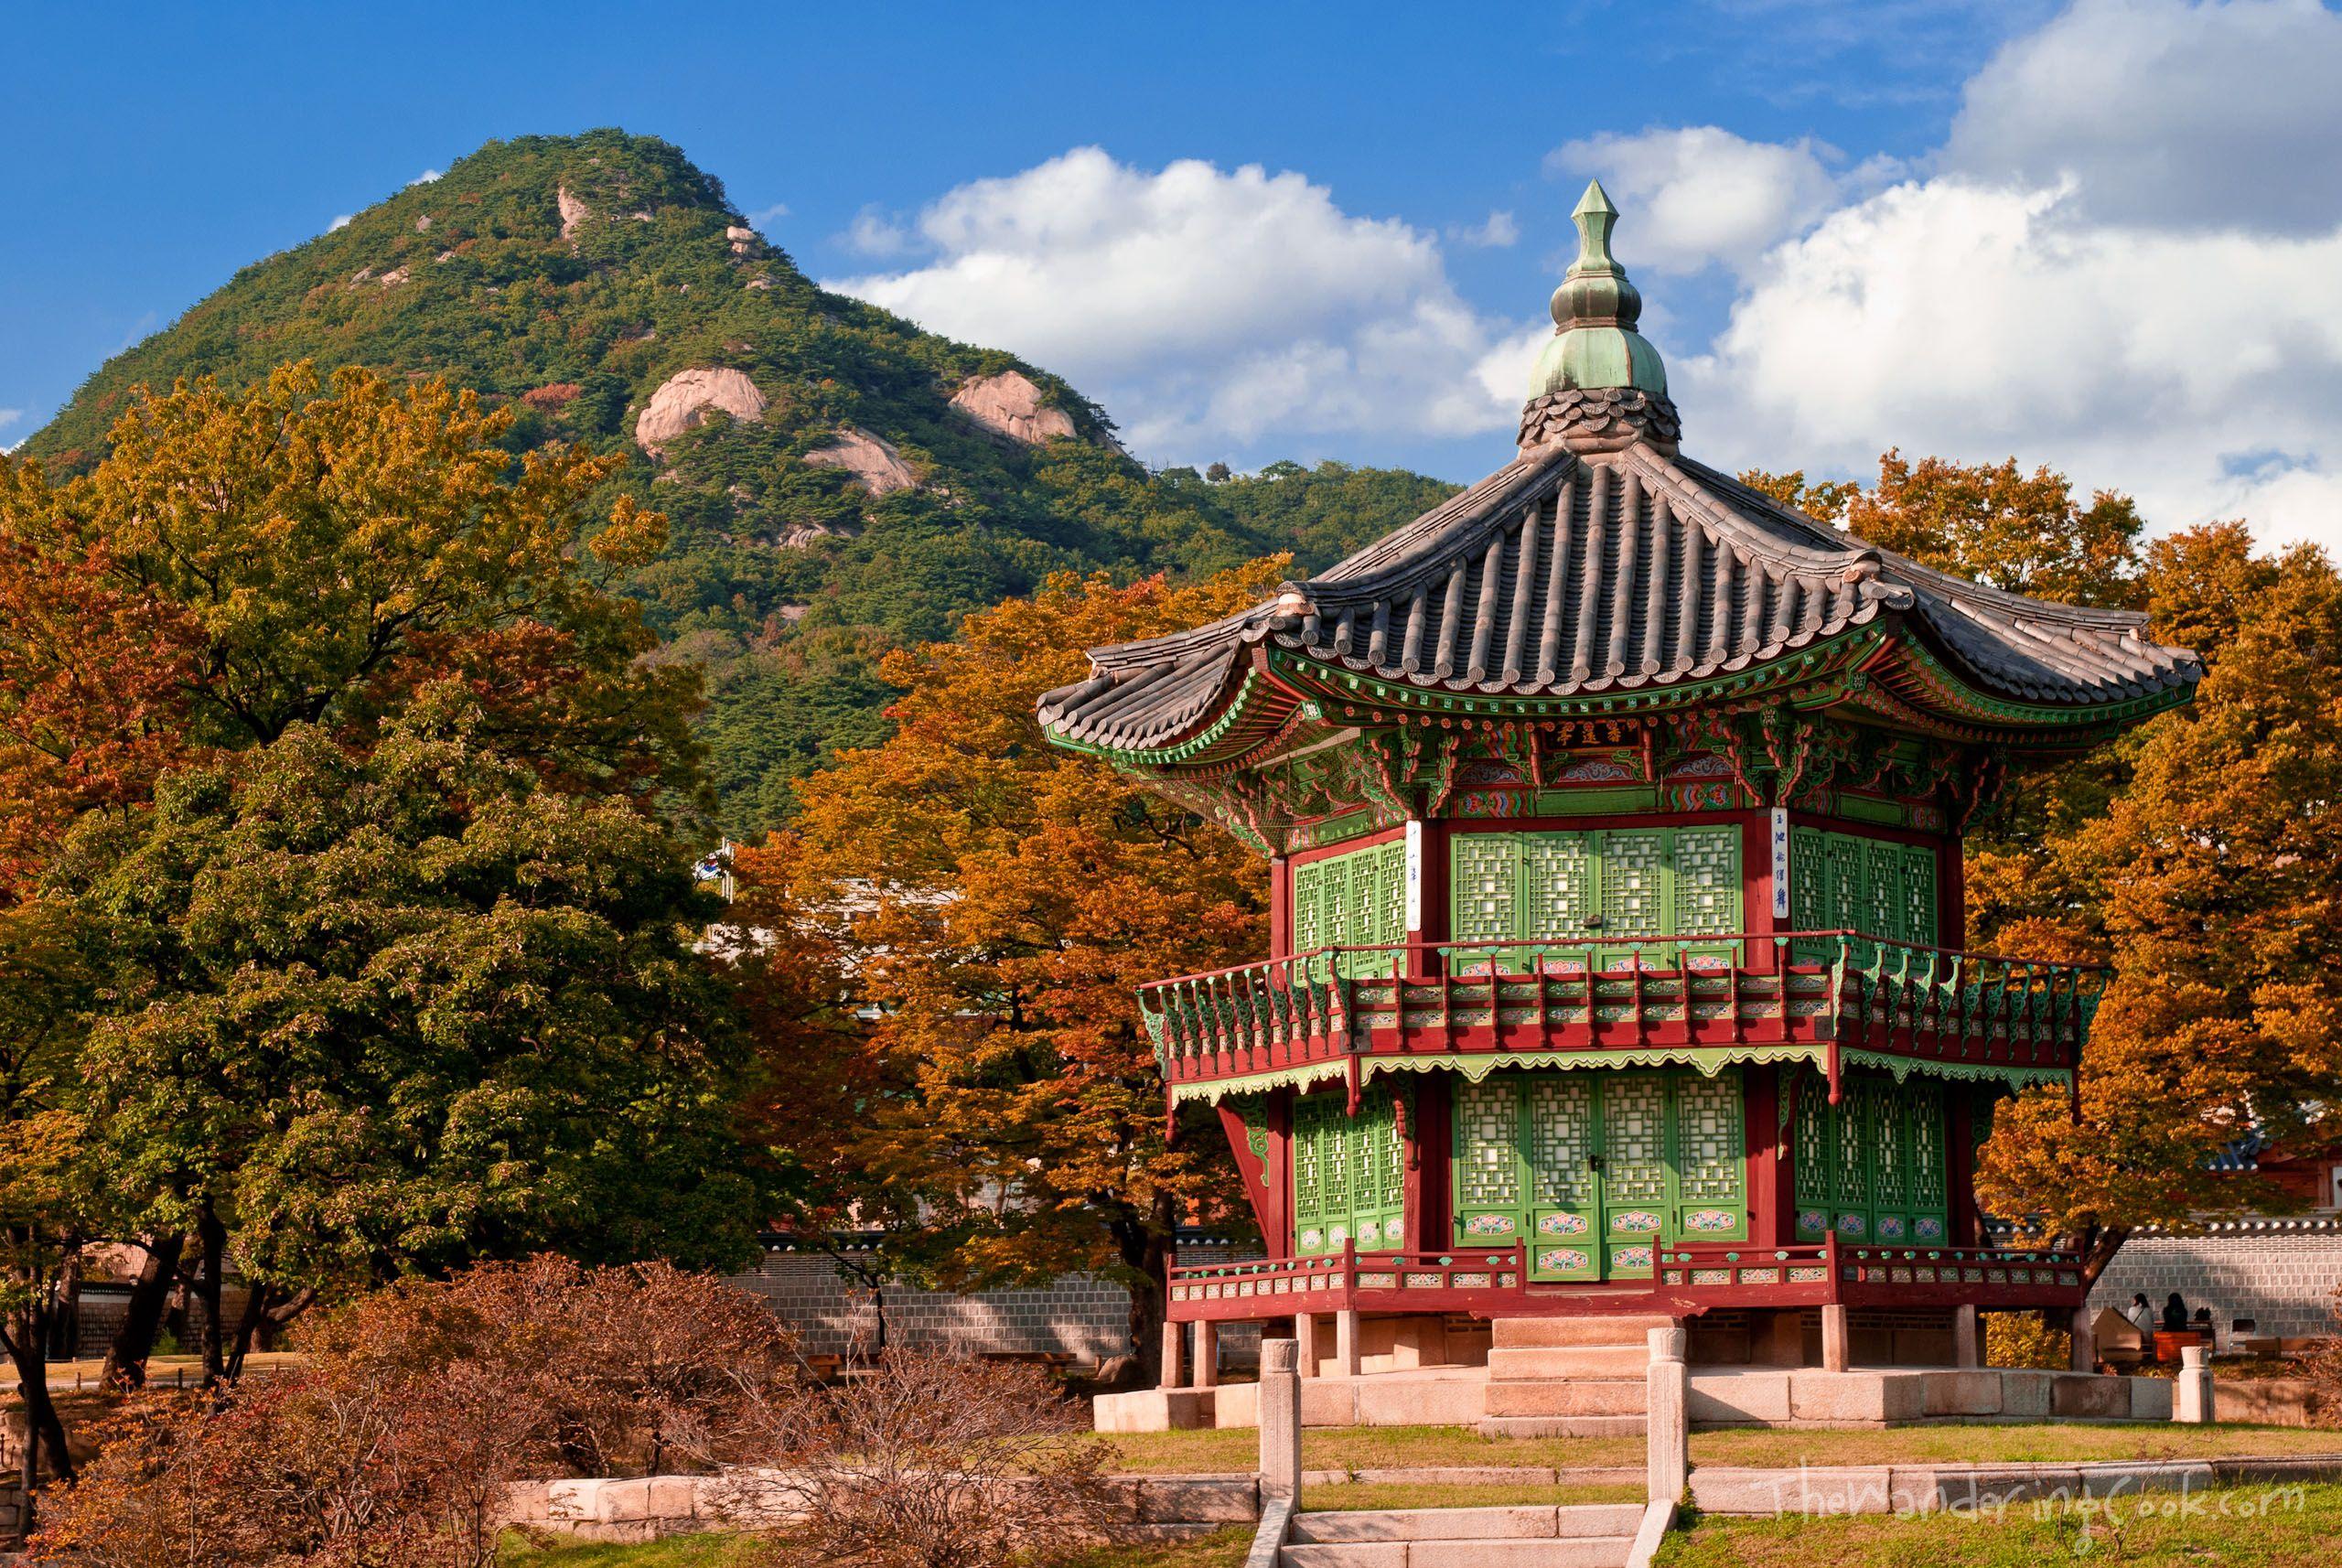 Korea Wallpaper Hd Tempat Wisata Seoul | Tempat Wisata Indonesia